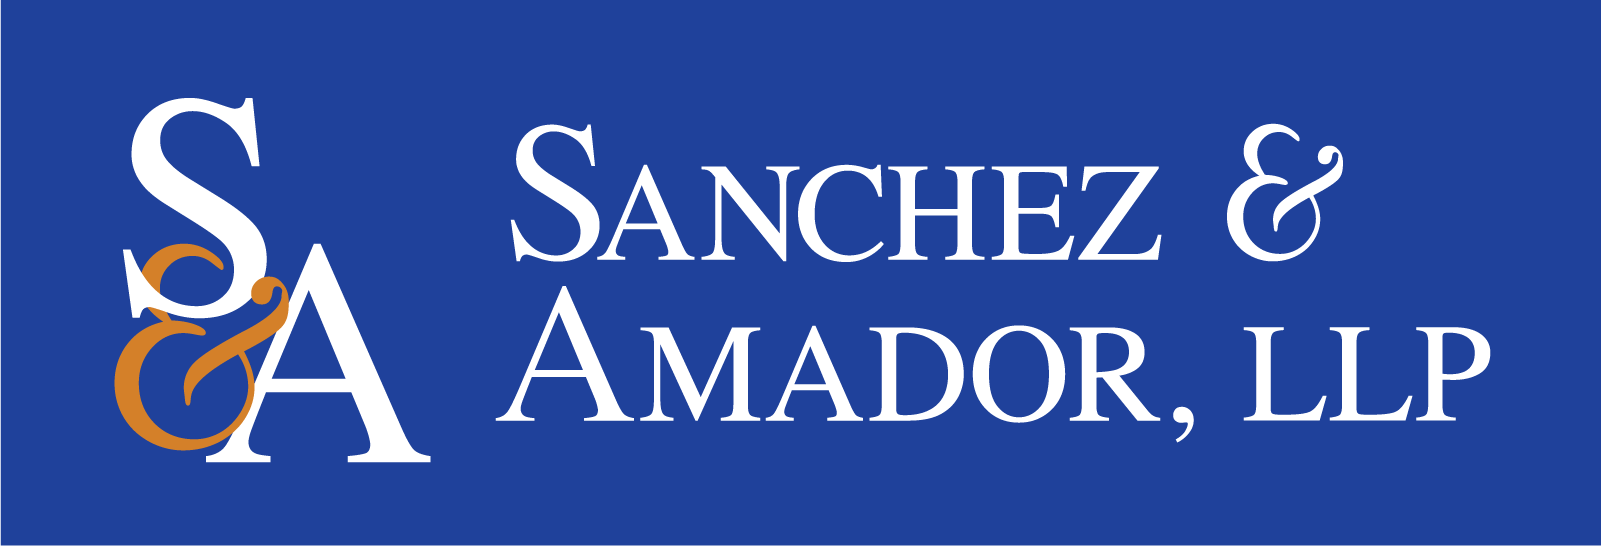 Sanchez & Amador